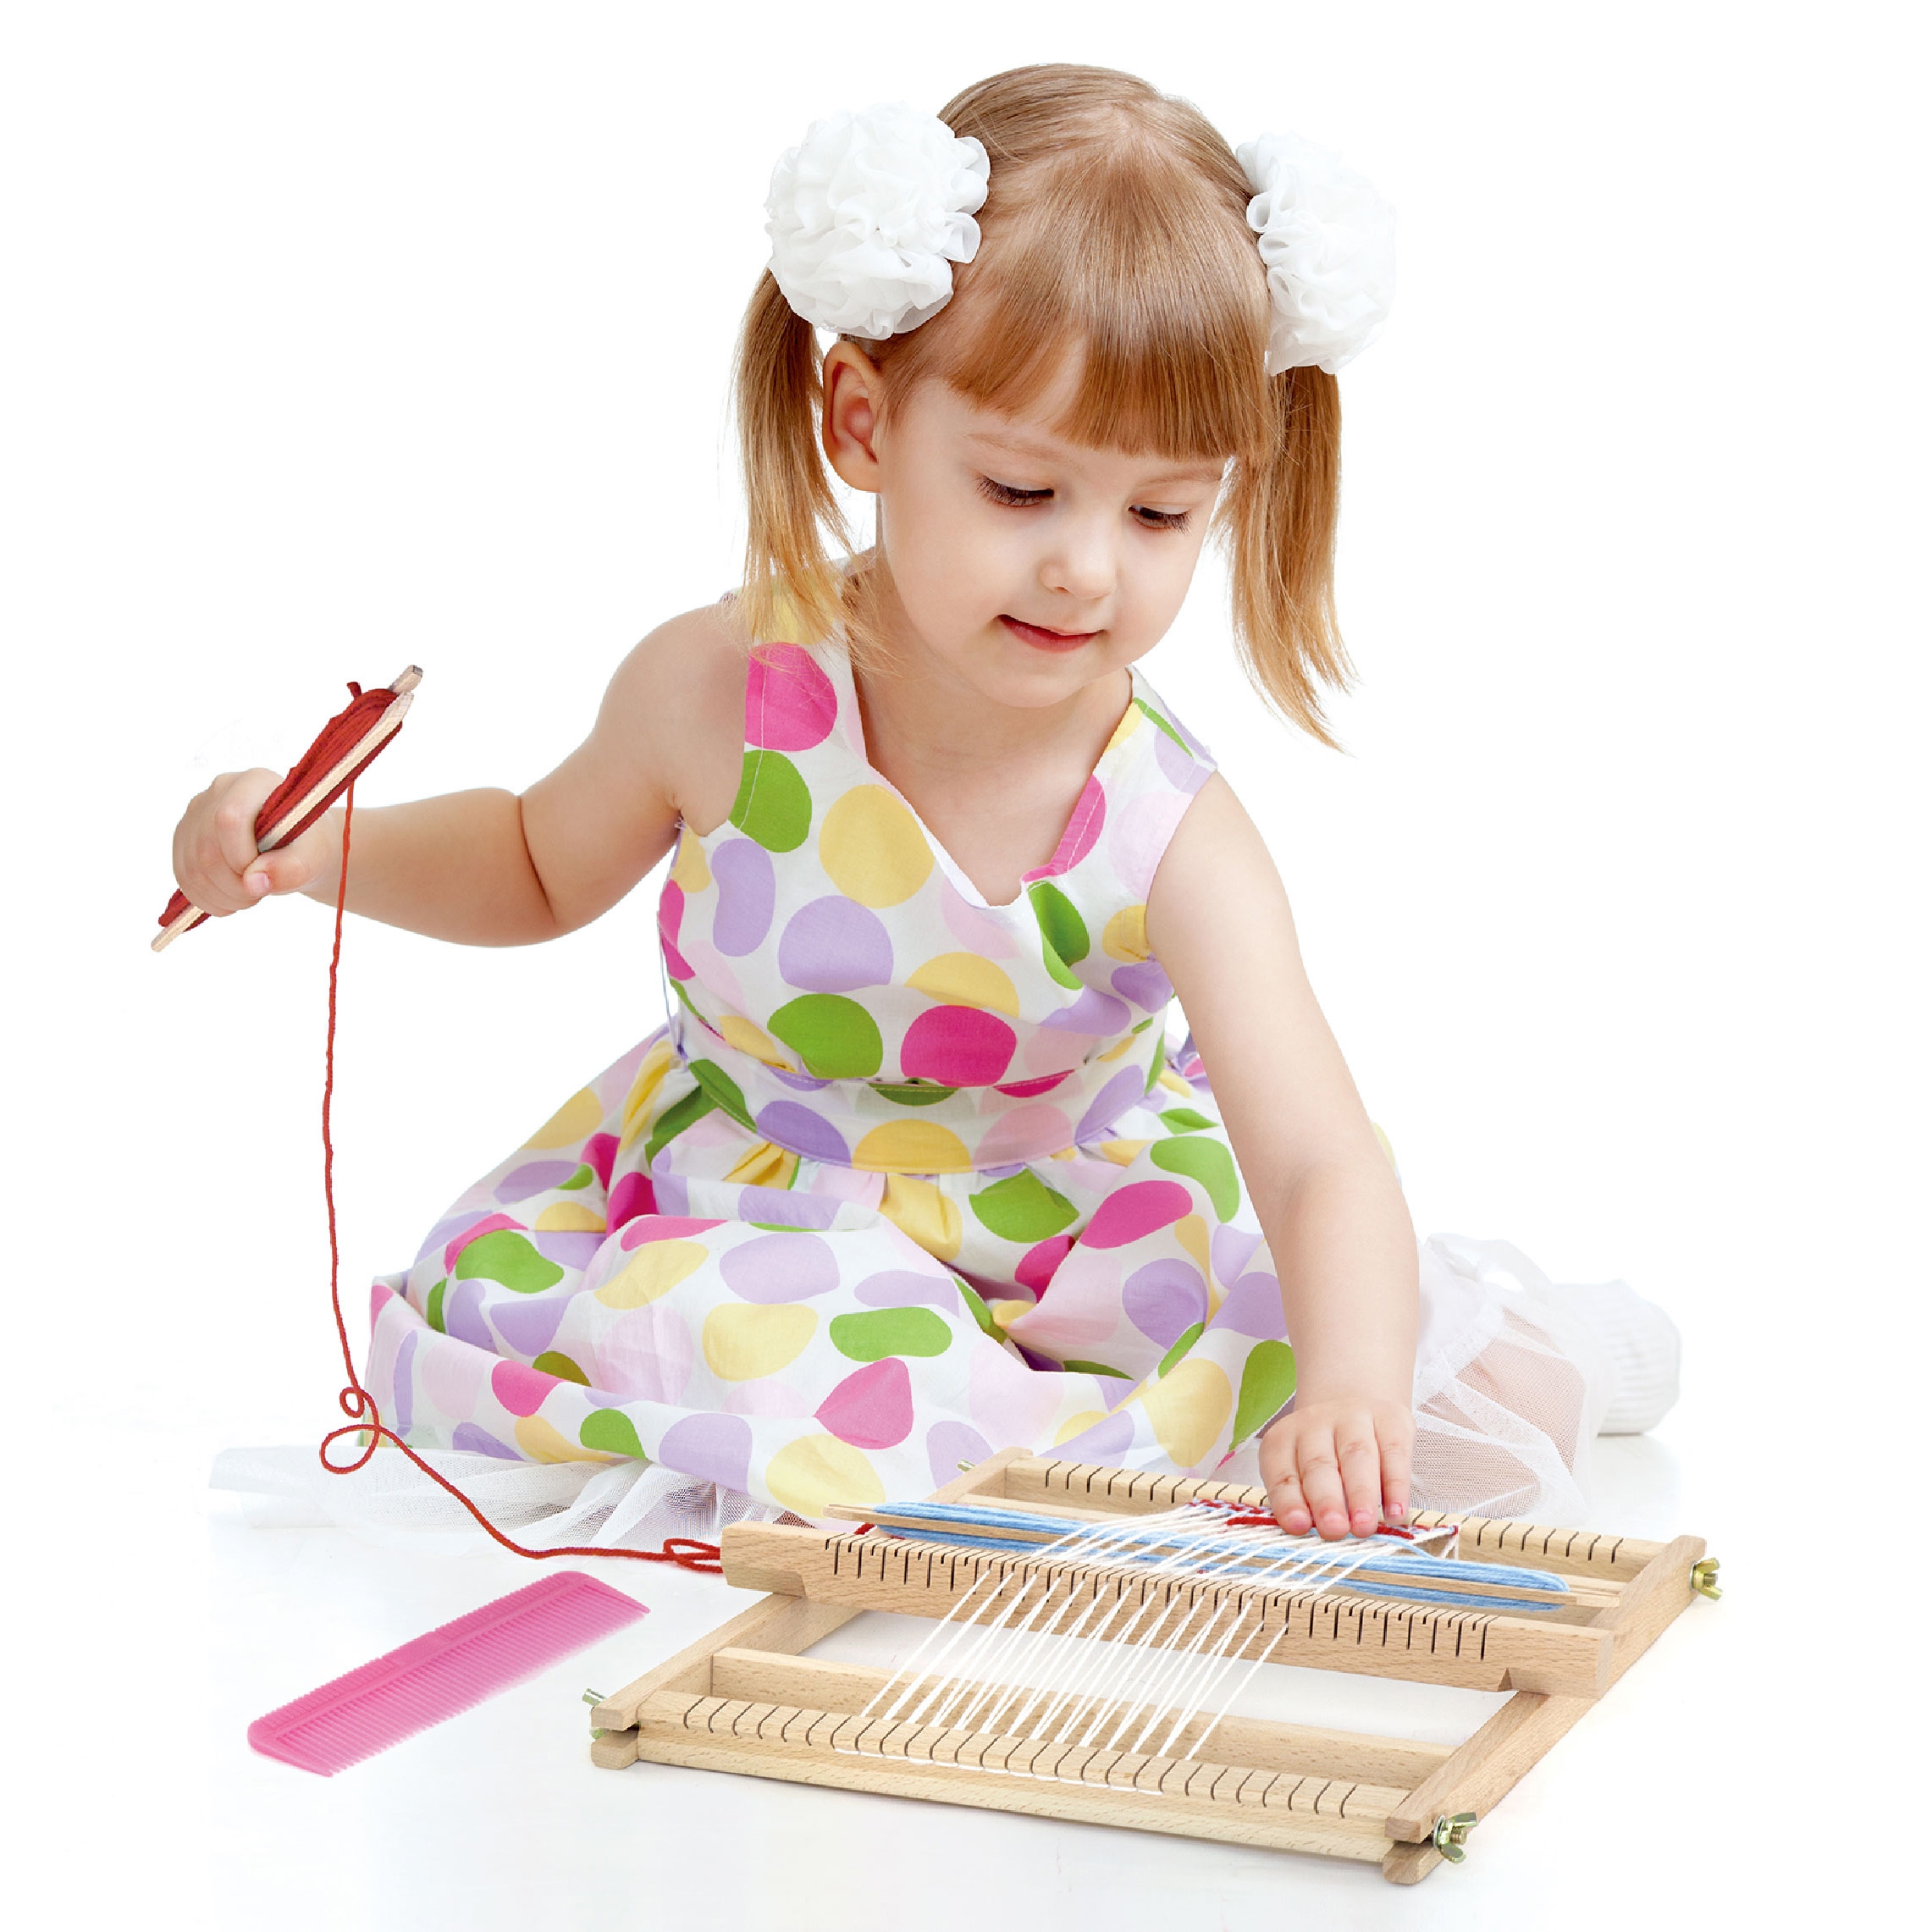 Drewniane krosno warsztat tkacki zestaw do tkania Montessori, zabawka dla dzieci, Viga